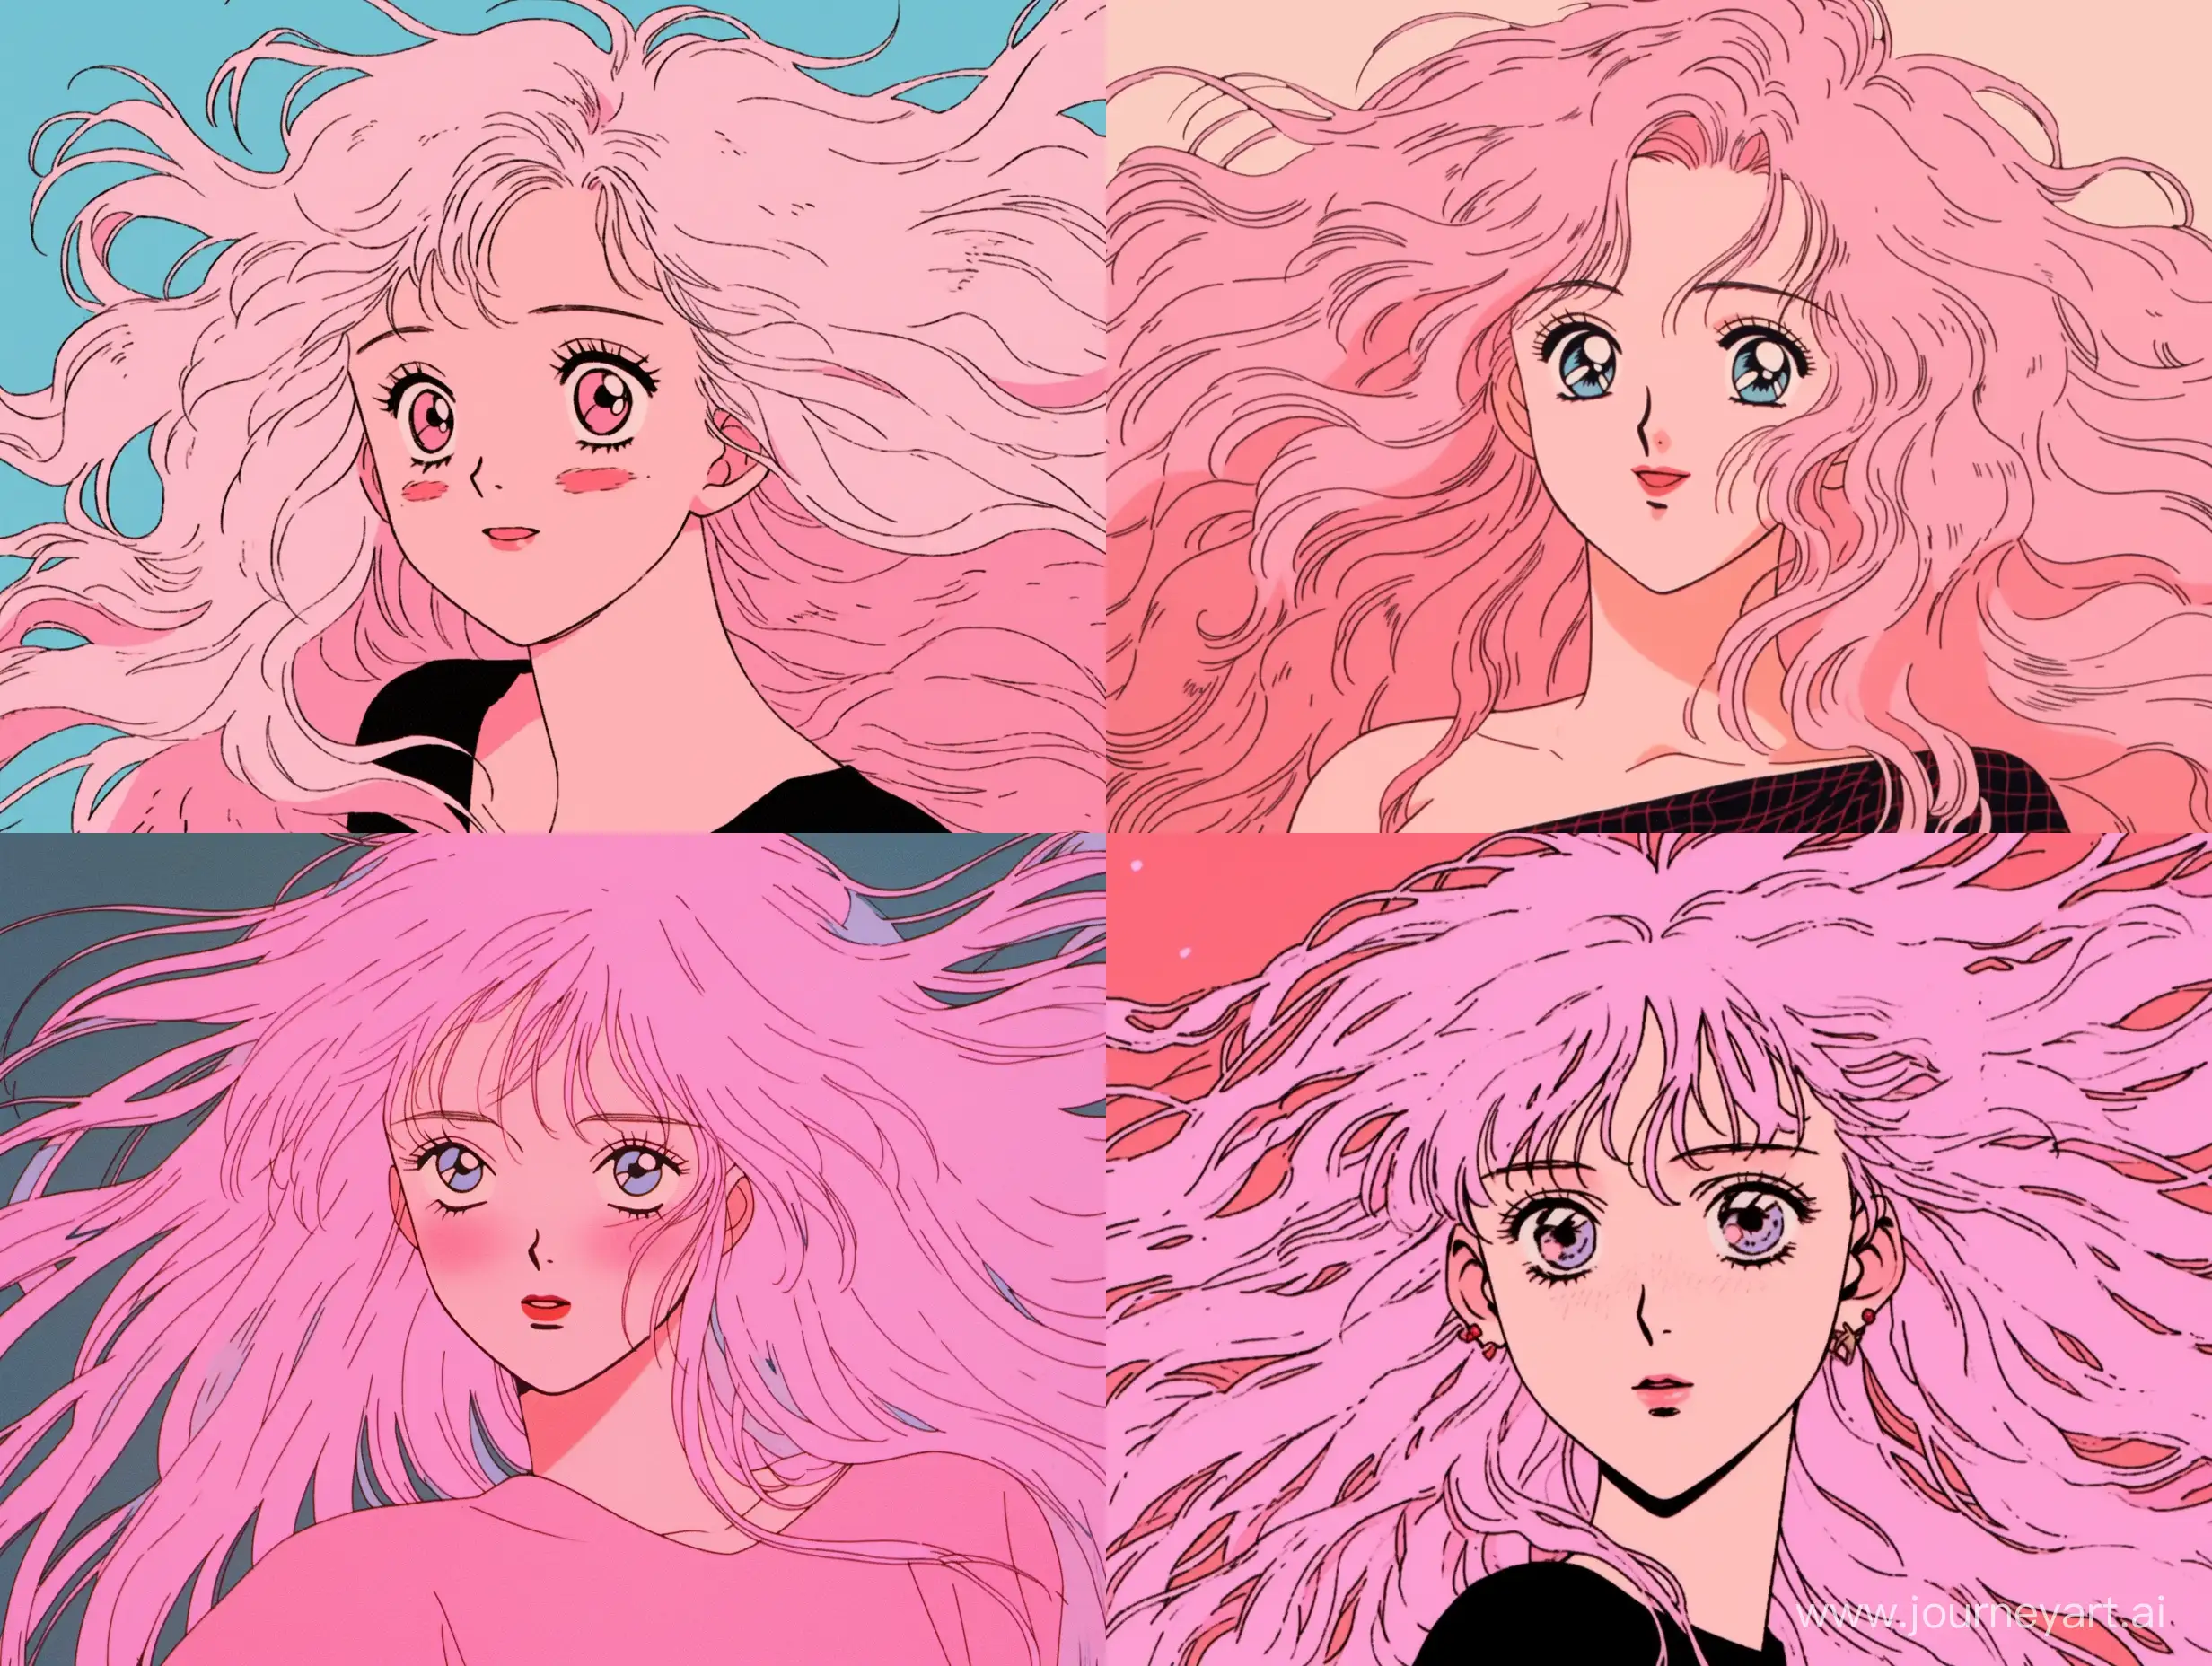 Pinkhaired-Manga-Style-Woman-with-Nostalgic-90s-Anime-Aesthetics